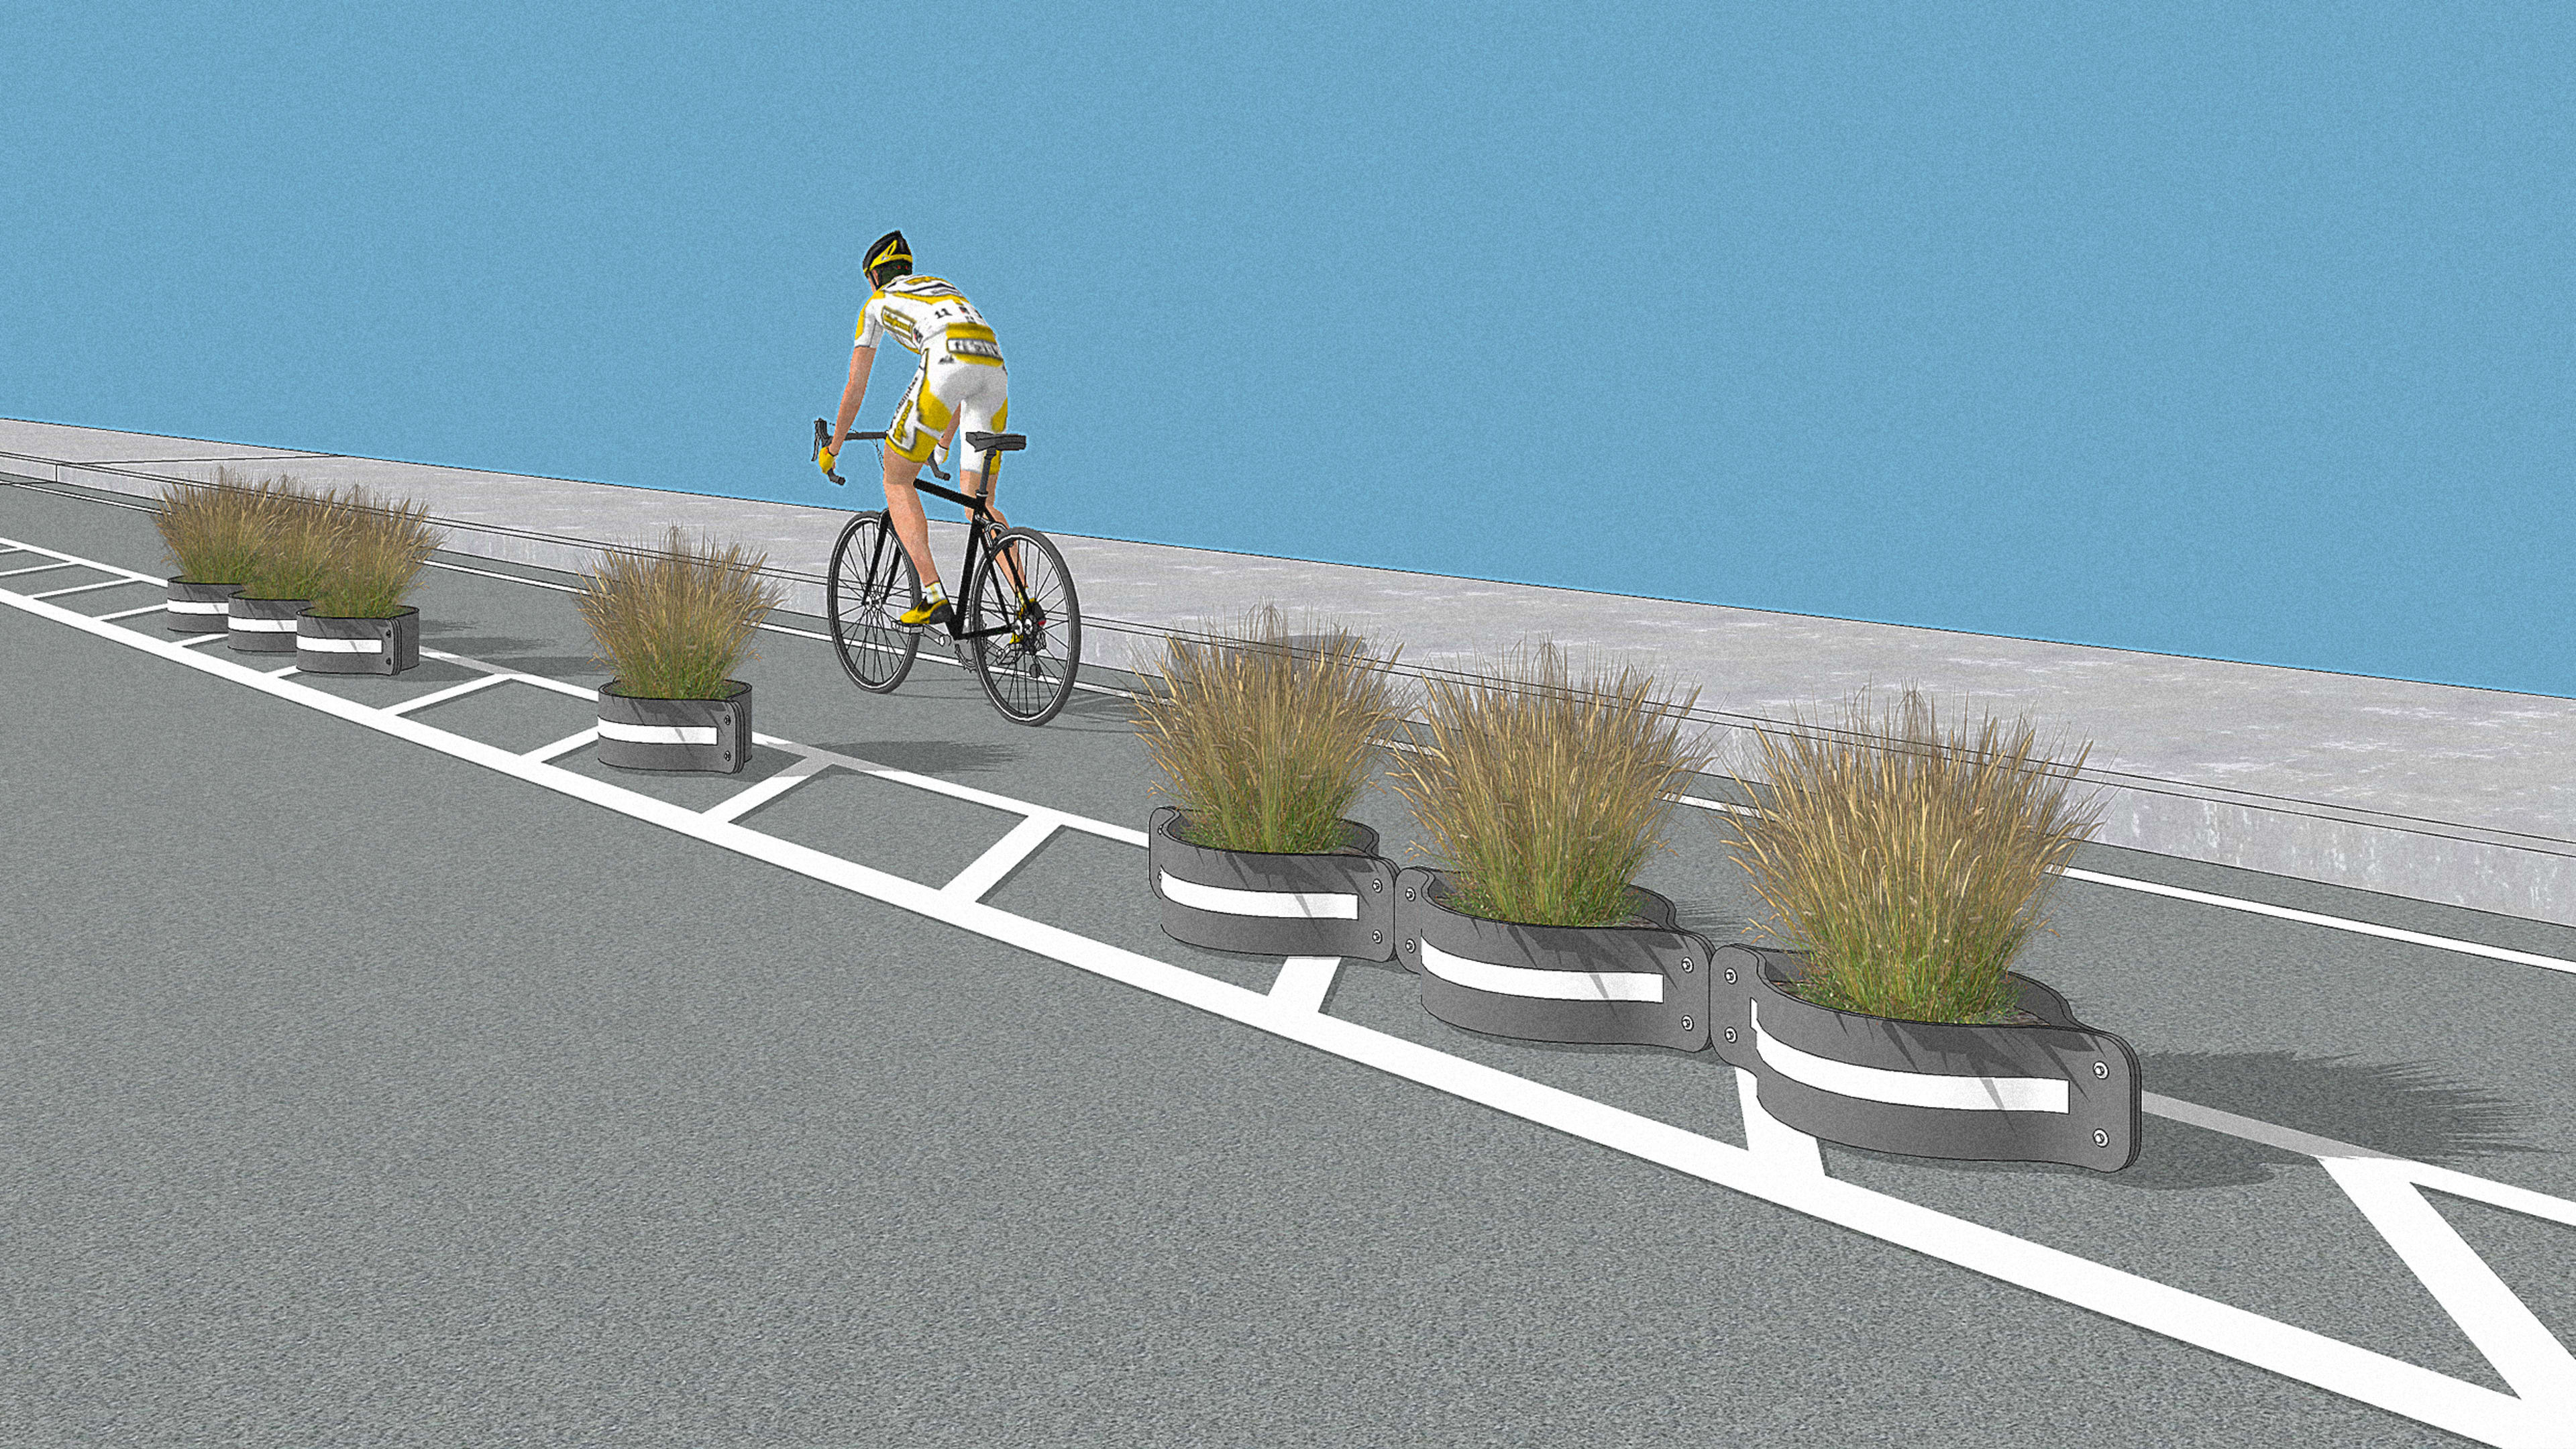 How old tires could make bike lanes way safer